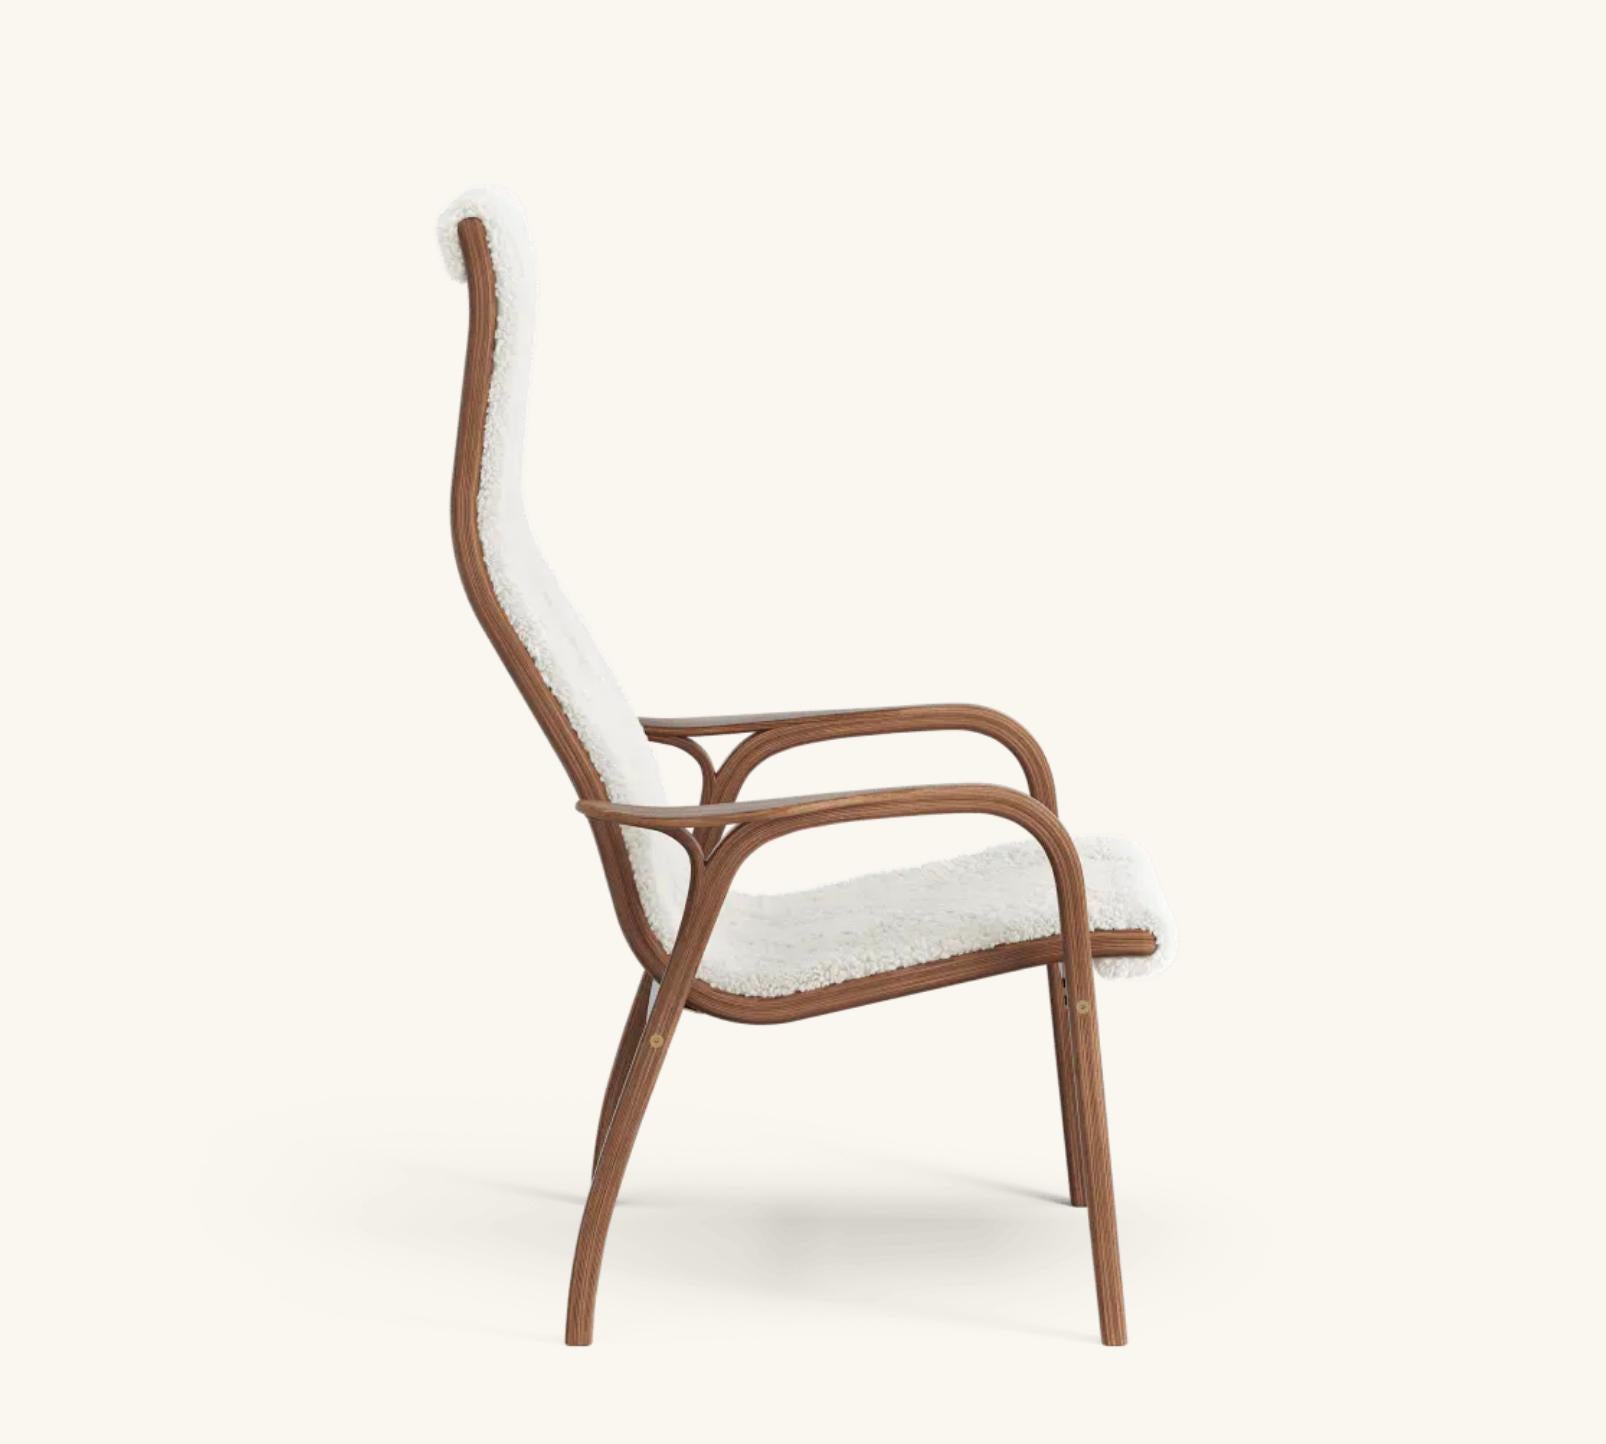 Yngve Ekström Lamino Easy Chair von Swedese in Nussbaum und Schafsleder 'Off White'. Neu, Design von 1956.

Der Lamino von Yngve Ekström ist einer der kultigsten skandinavischen Sessel. Dieser 1956 entworfene Stuhl ist nie aus der Mode gekommen.